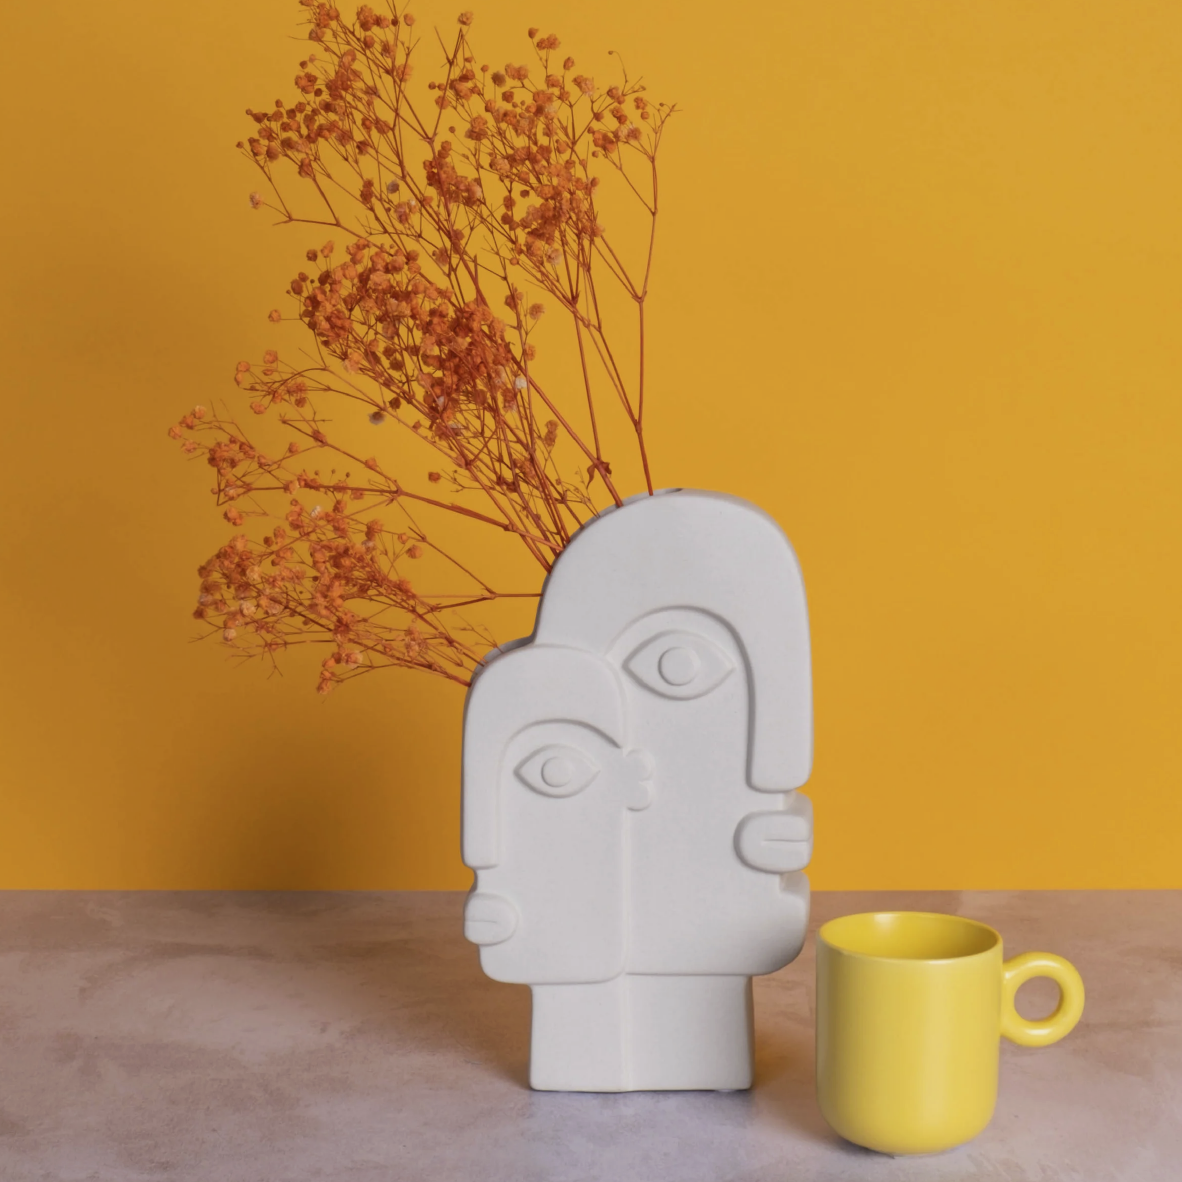 Two-Faced Ceramic Vase